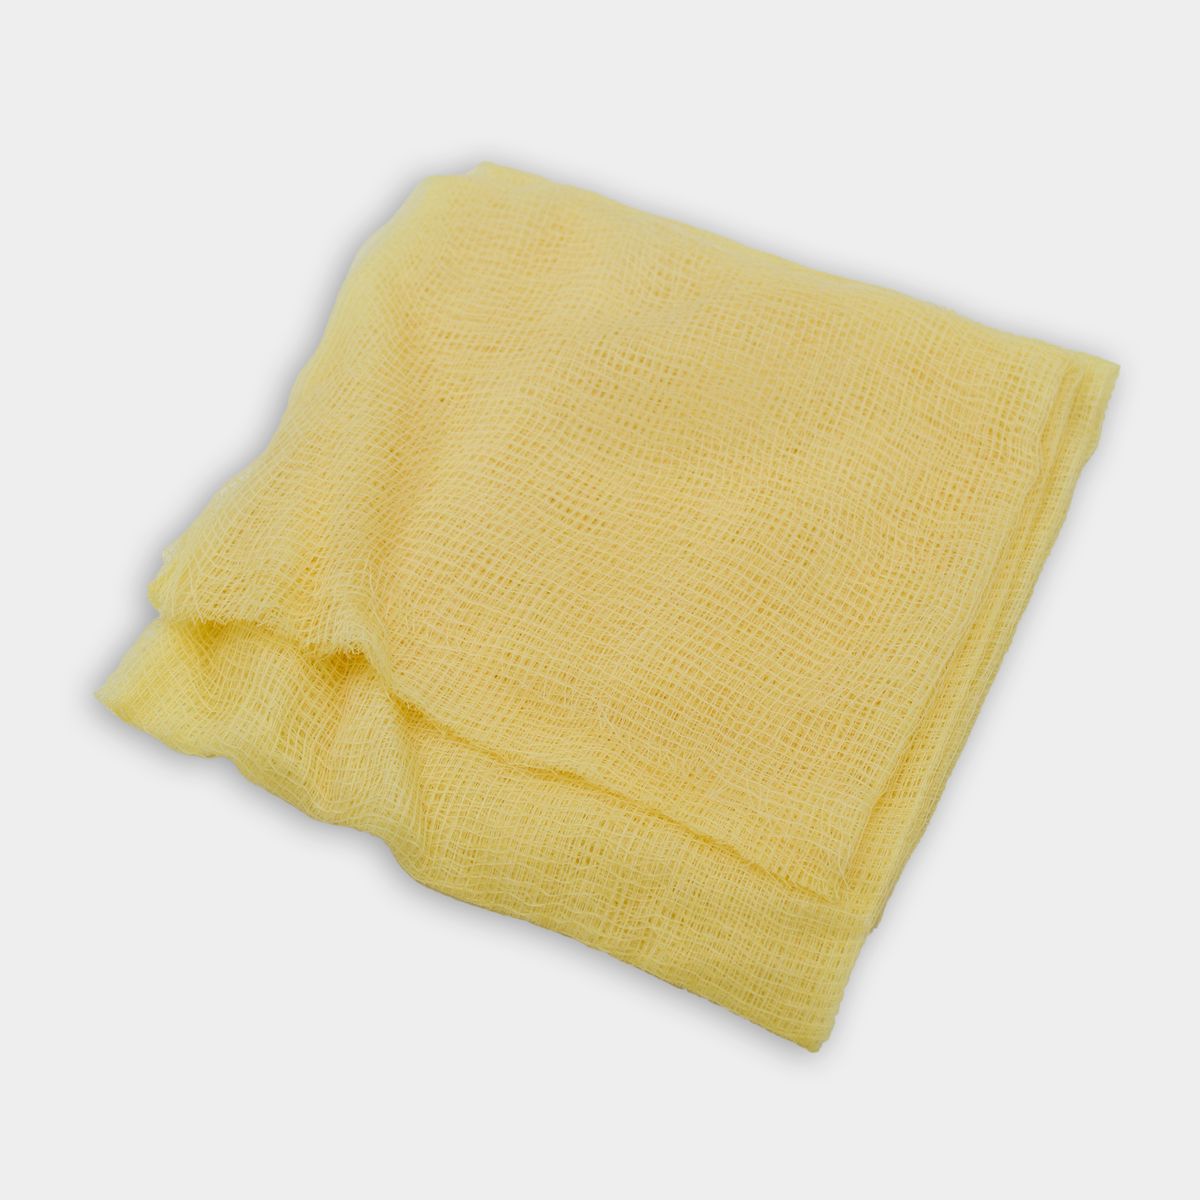 Yellow tack cloth